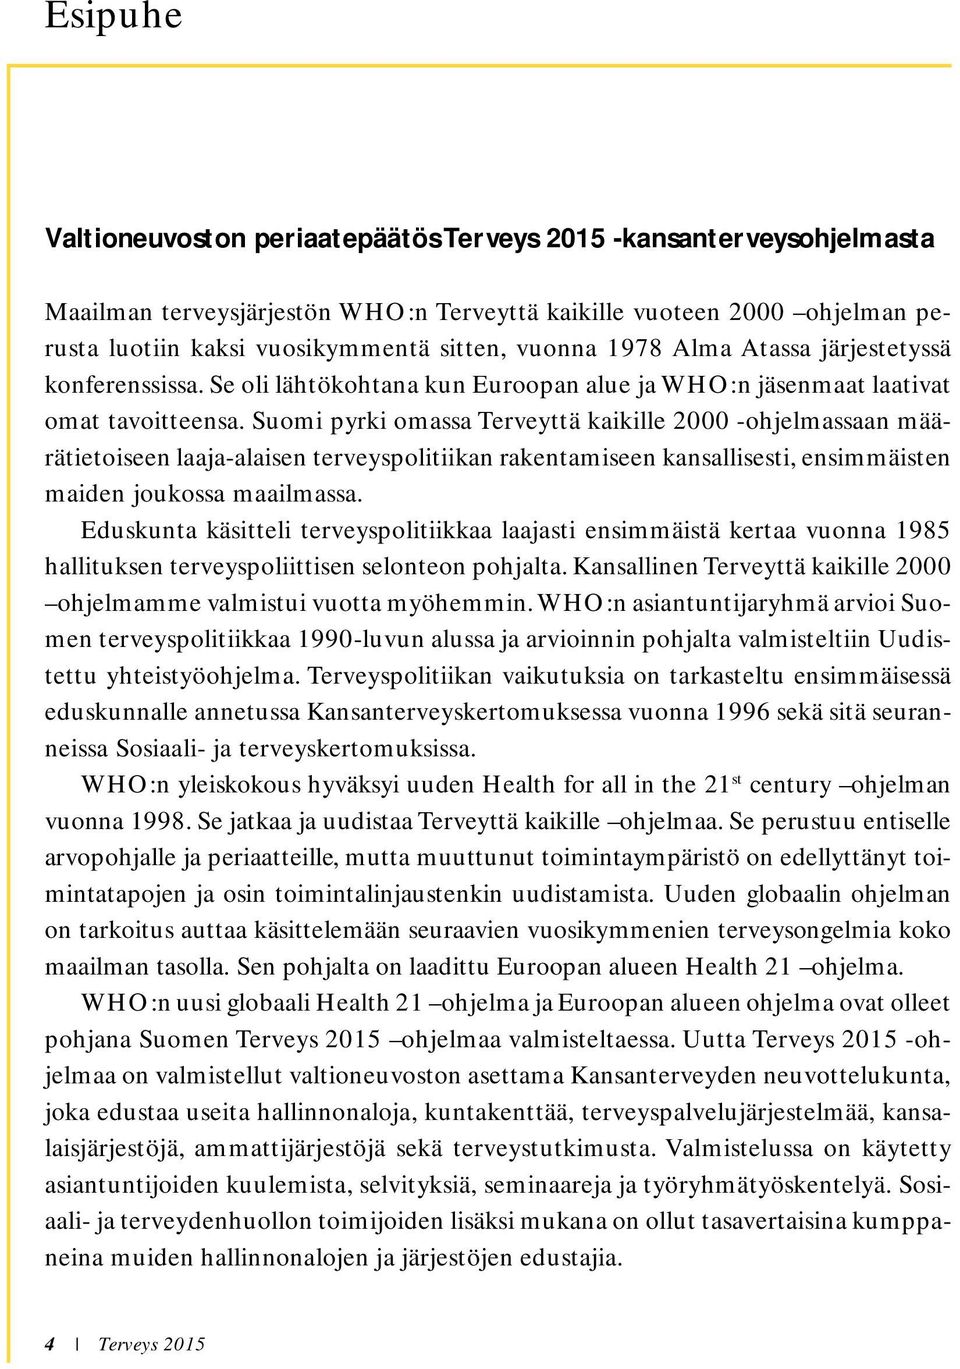 Suomi pyrki omassa Terveyttä kaikille 2000 -ohjelmassaan määrätietoiseen laaja-alaisen terveyspolitiikan rakentamiseen kansallisesti, ensimmäisten maiden joukossa maailmassa.